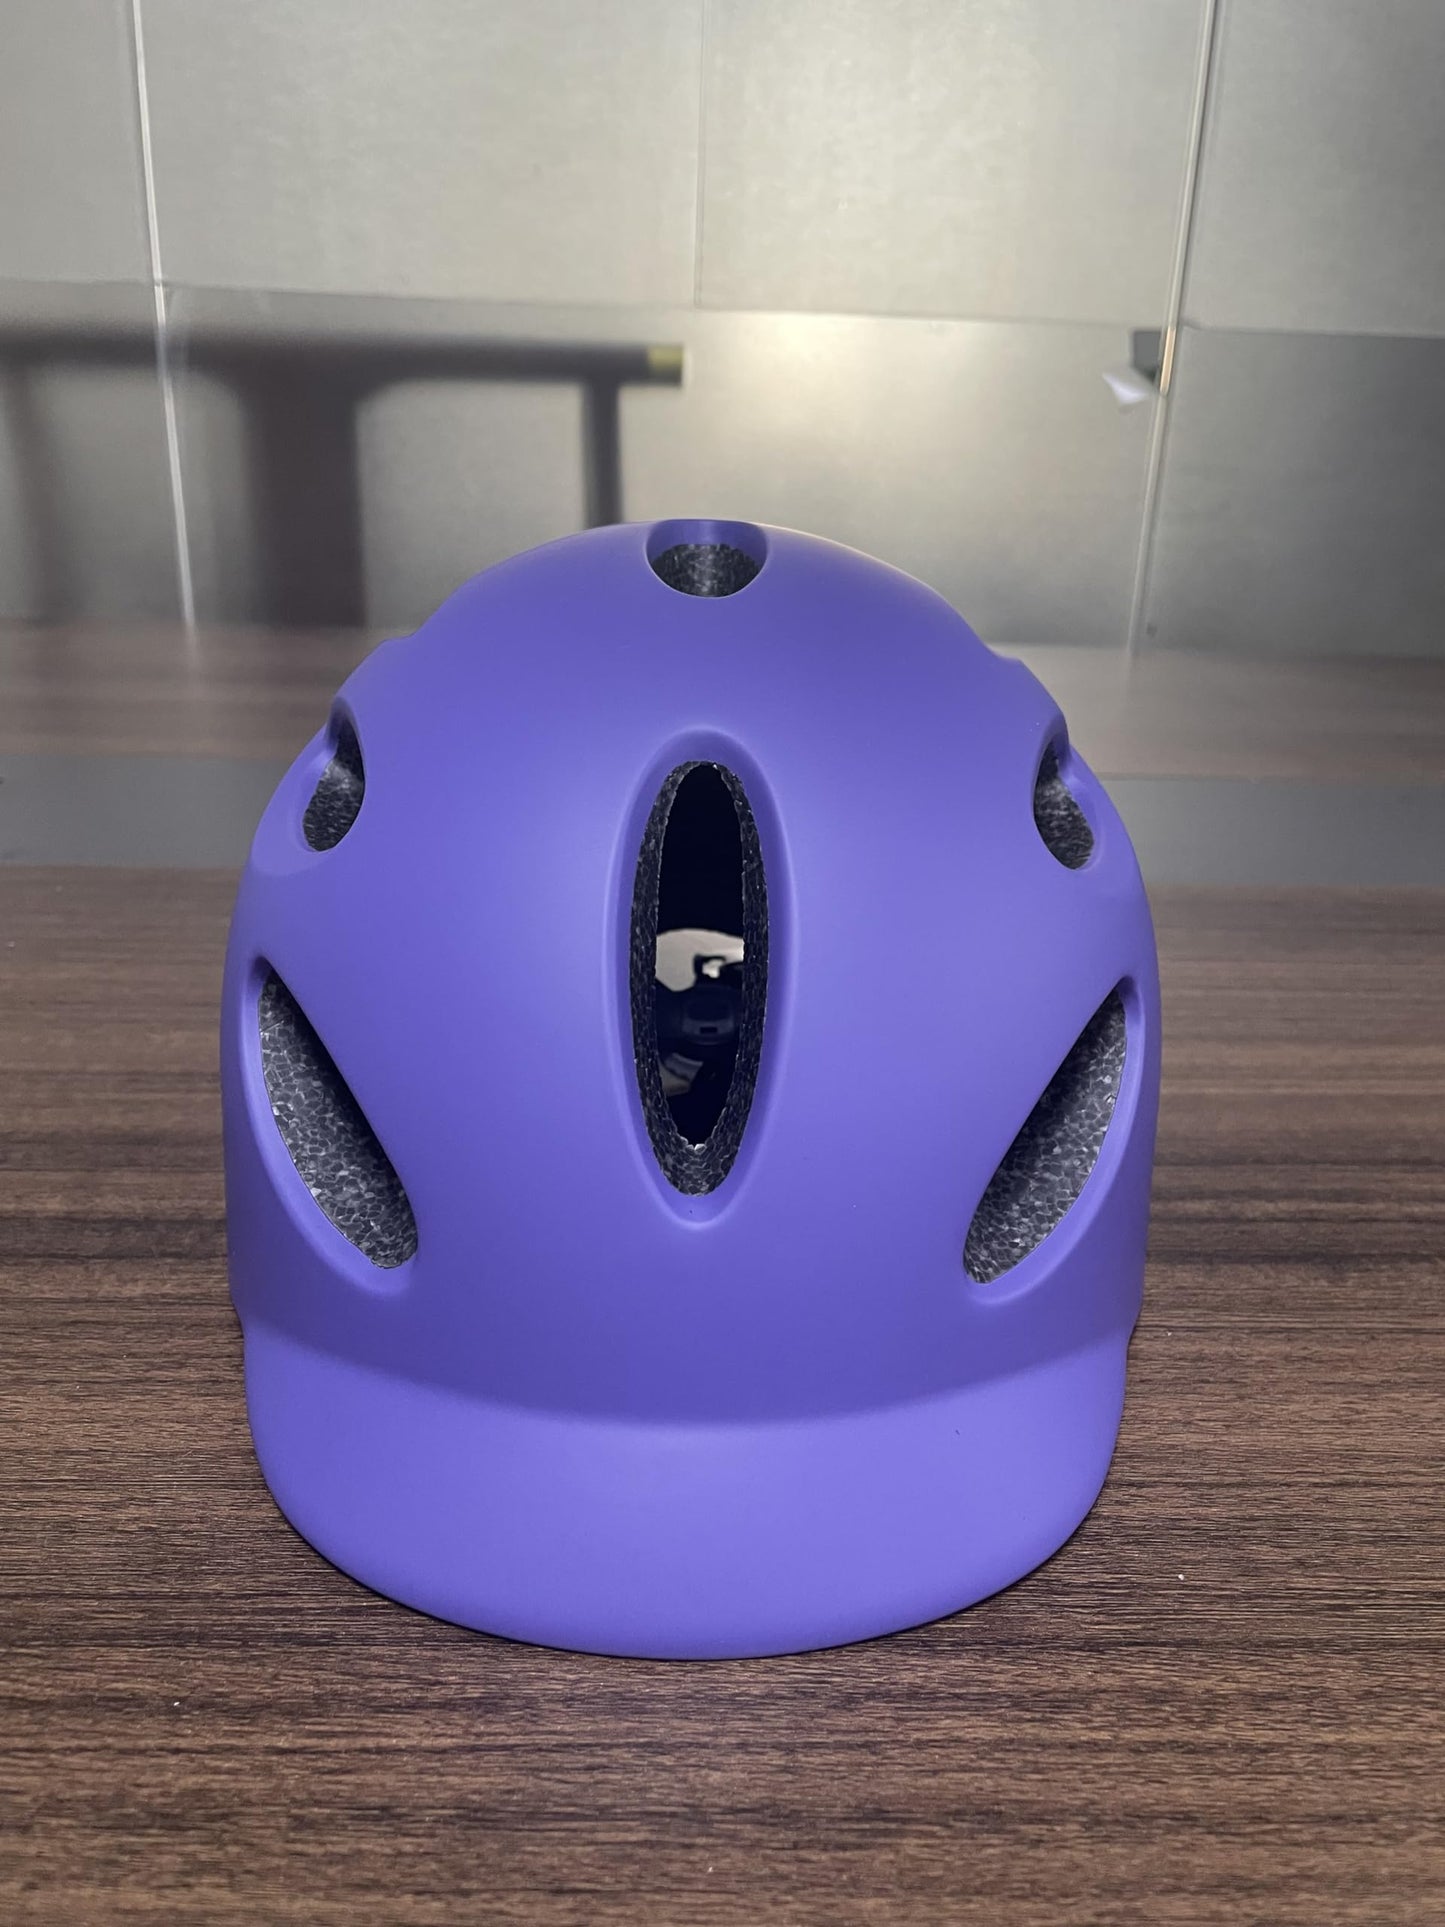 Exclusky Bike Helmet with Rechargeable USB Light, Urban Bicycle Commuter Helmet Men Adult Cycle Helmet Women 54-58cm/58-62cm